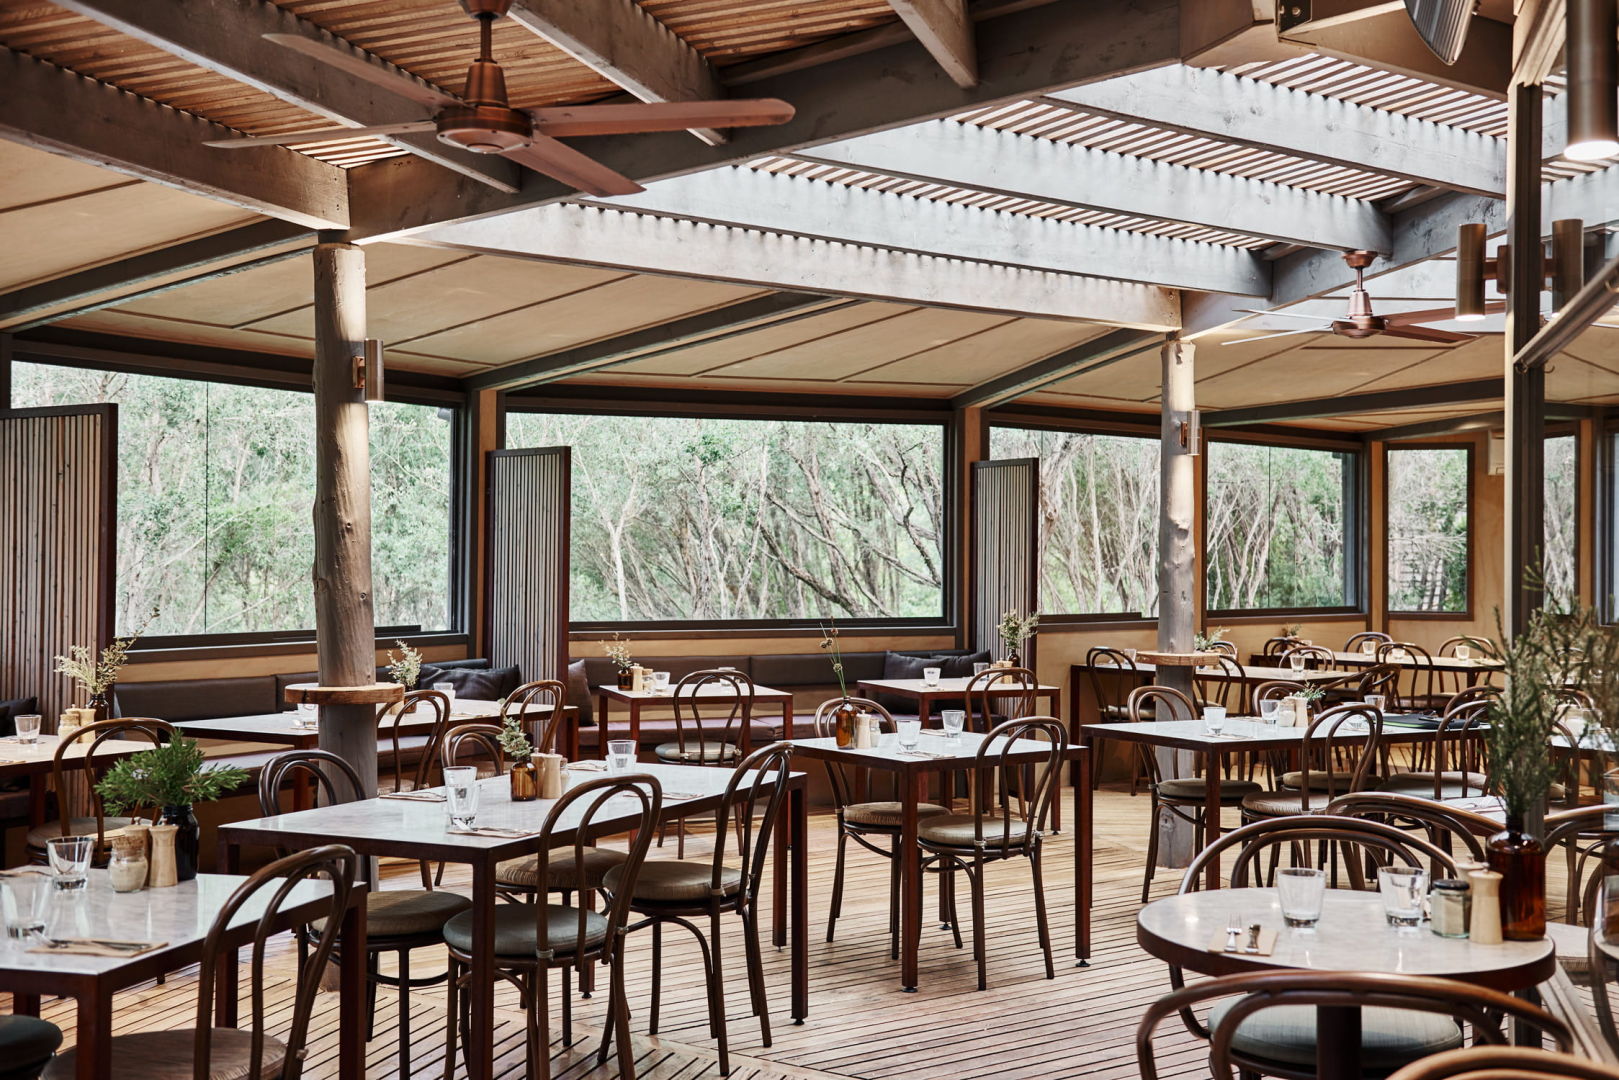 Before & After_hospitality cafe deck design_timber slats